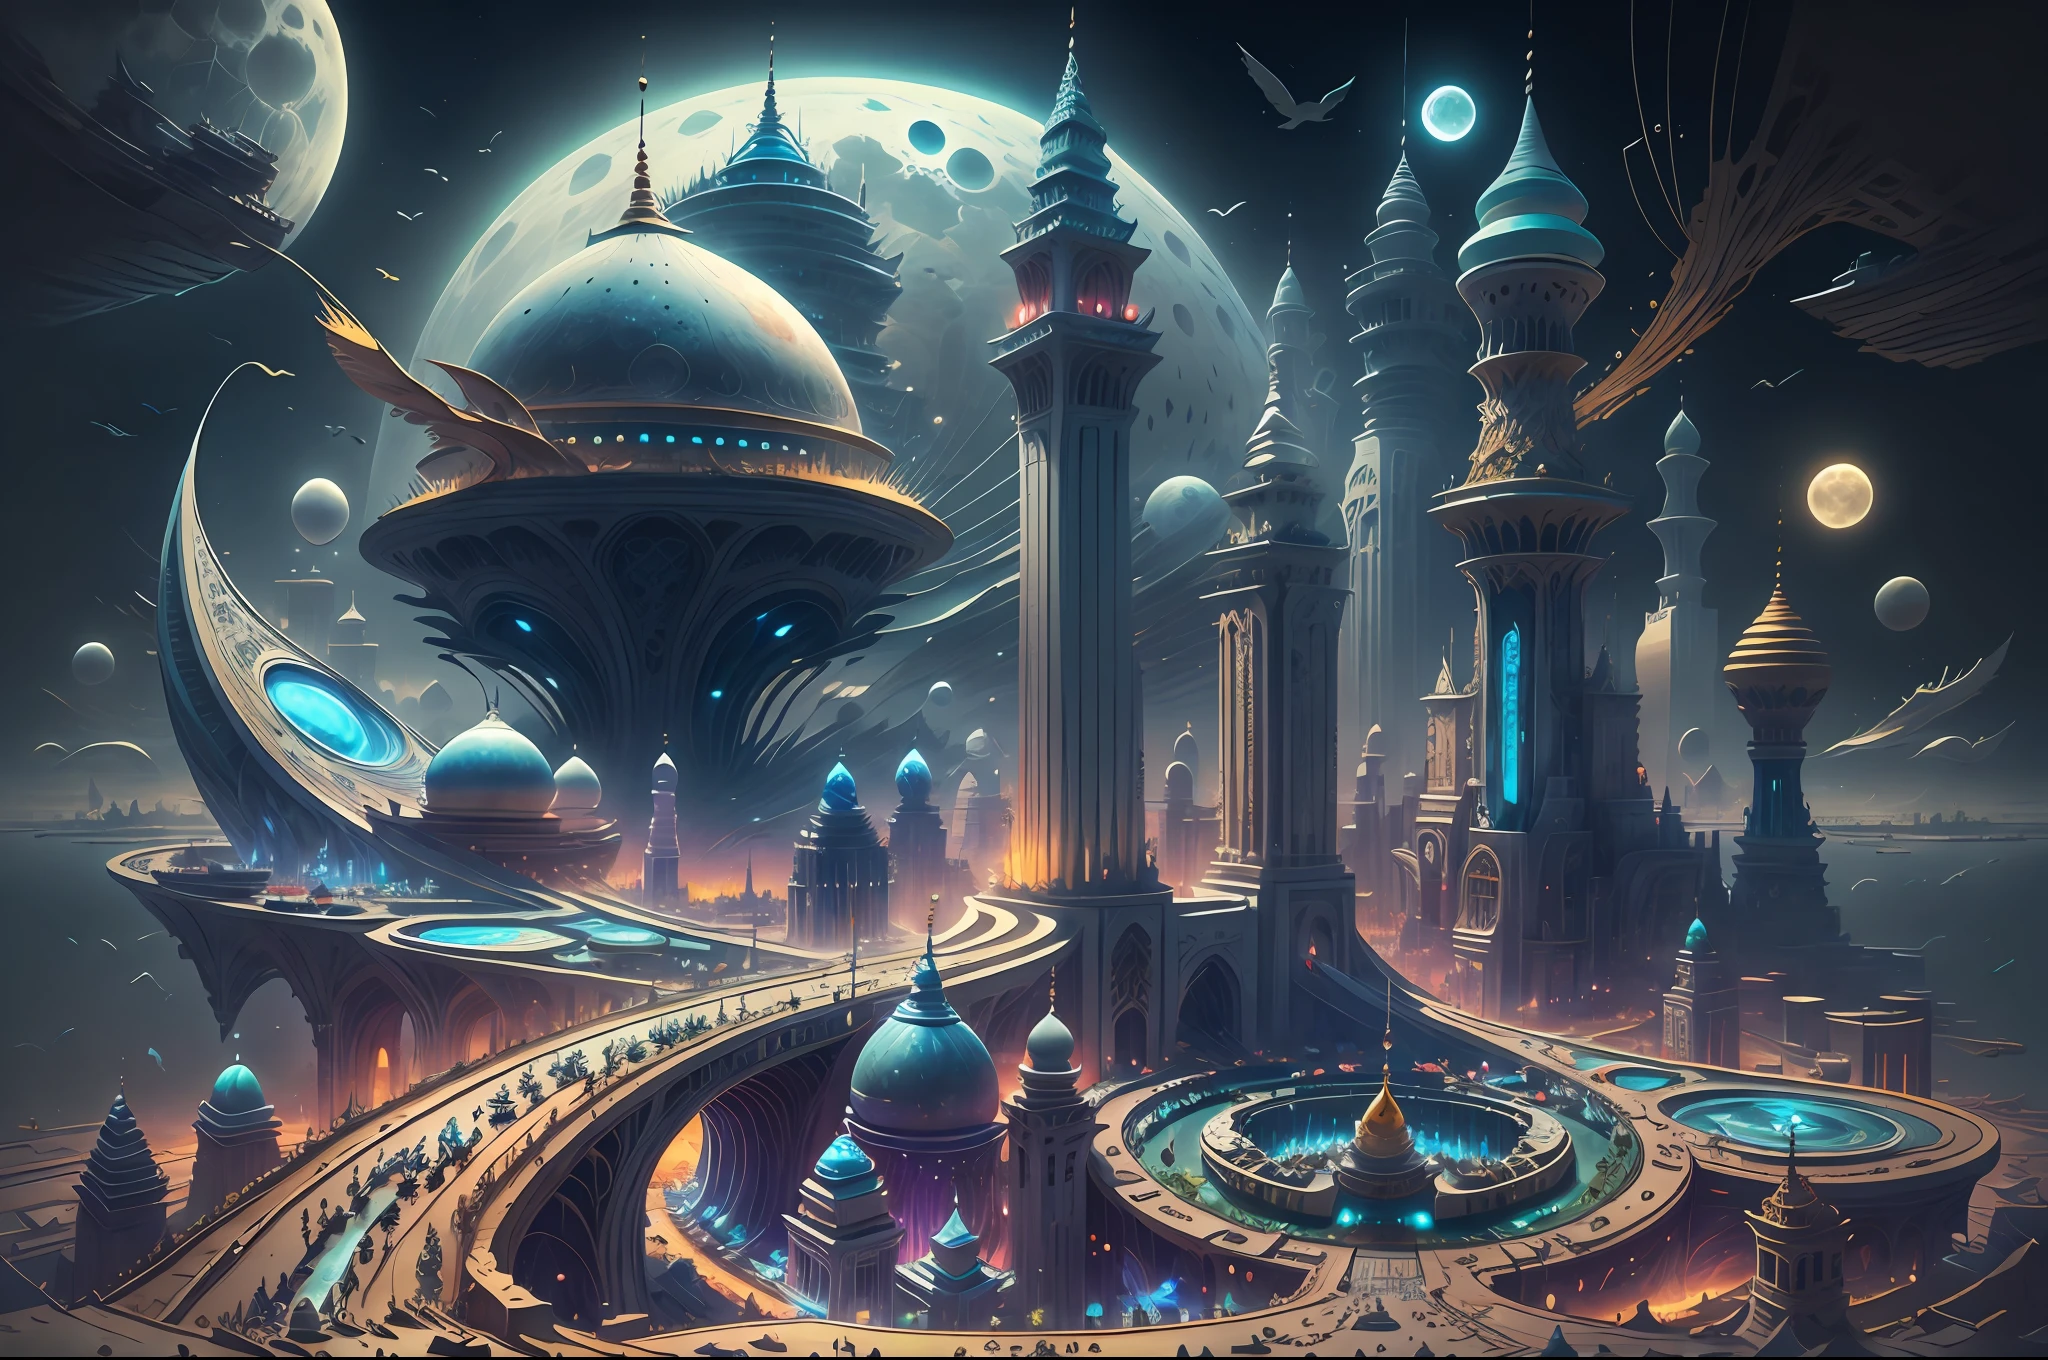 il y a un grand chef-d&#39;œuvre futuriste, un palais arabe au milieu d&#39;une ville arabe futuriste avec une lune, dans une ville fantastique de science-fiction, fond d&#39;écran fantastique de science-fiction, chef-d&#39;œuvre de l&#39;art coranique paysage urbain, illustration de science-fiction épique de l&#39;art coranique, immense ville futuriste de l&#39;art coranique, science-fiction fantastique, fond d&#39;écran fantastique de science-fiction, Fond de ville d&#39;art coranique, in front of a Ville fantastique, Ville fantastique, dans un château sur une planète extraterrestre avec un chef-d&#39;œuvre de l&#39;art coranique